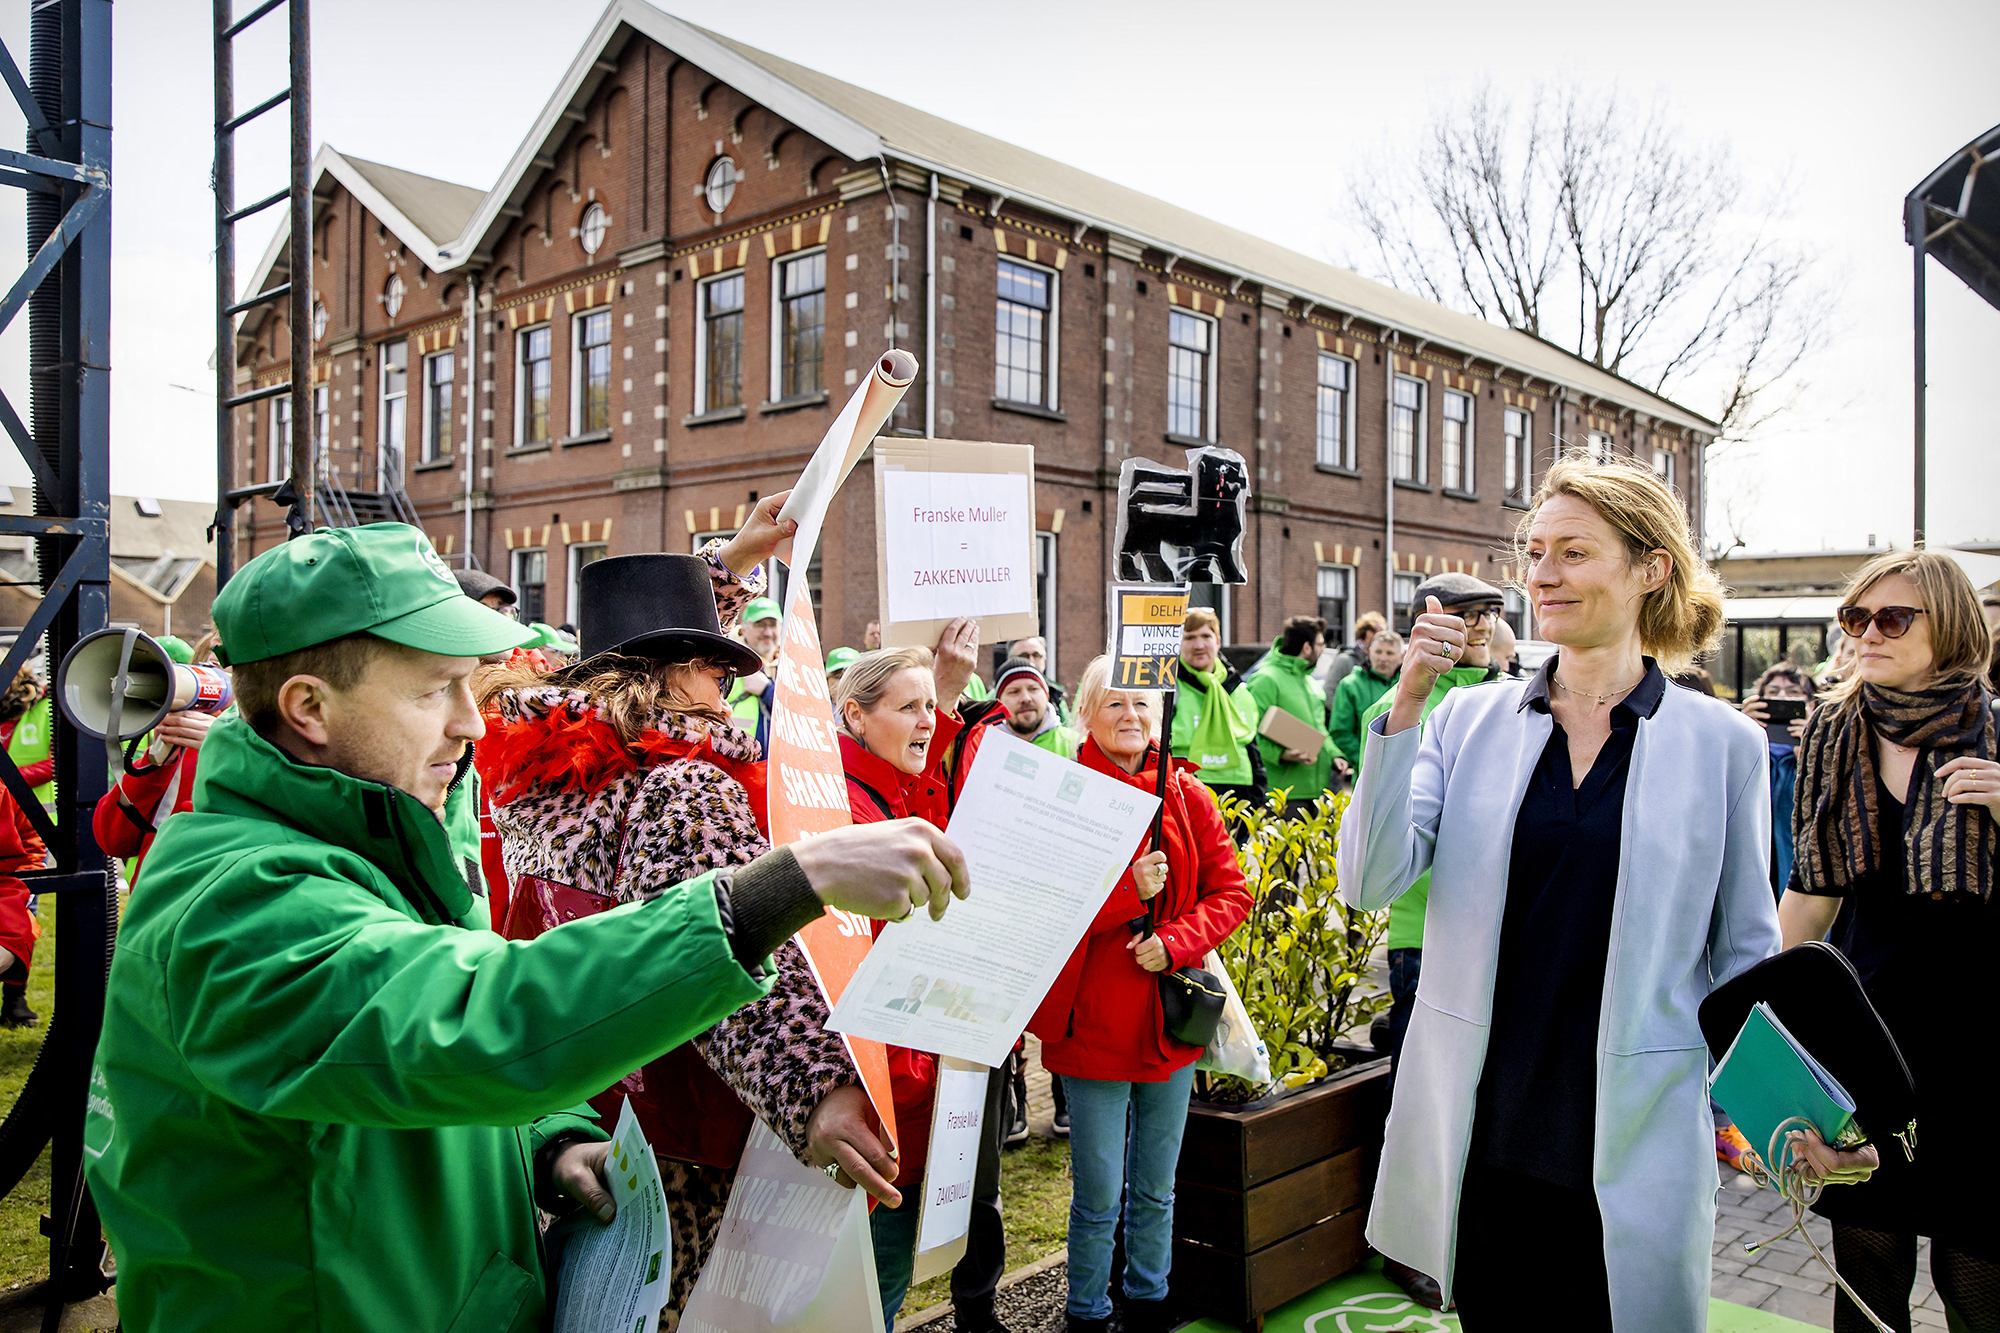 Protestaktion vor der Aktionärsversammlung von Ahold Delhaize im niederländischen Zaandam am 12. April (Bild: Koen van Weel/ANP/AFP)